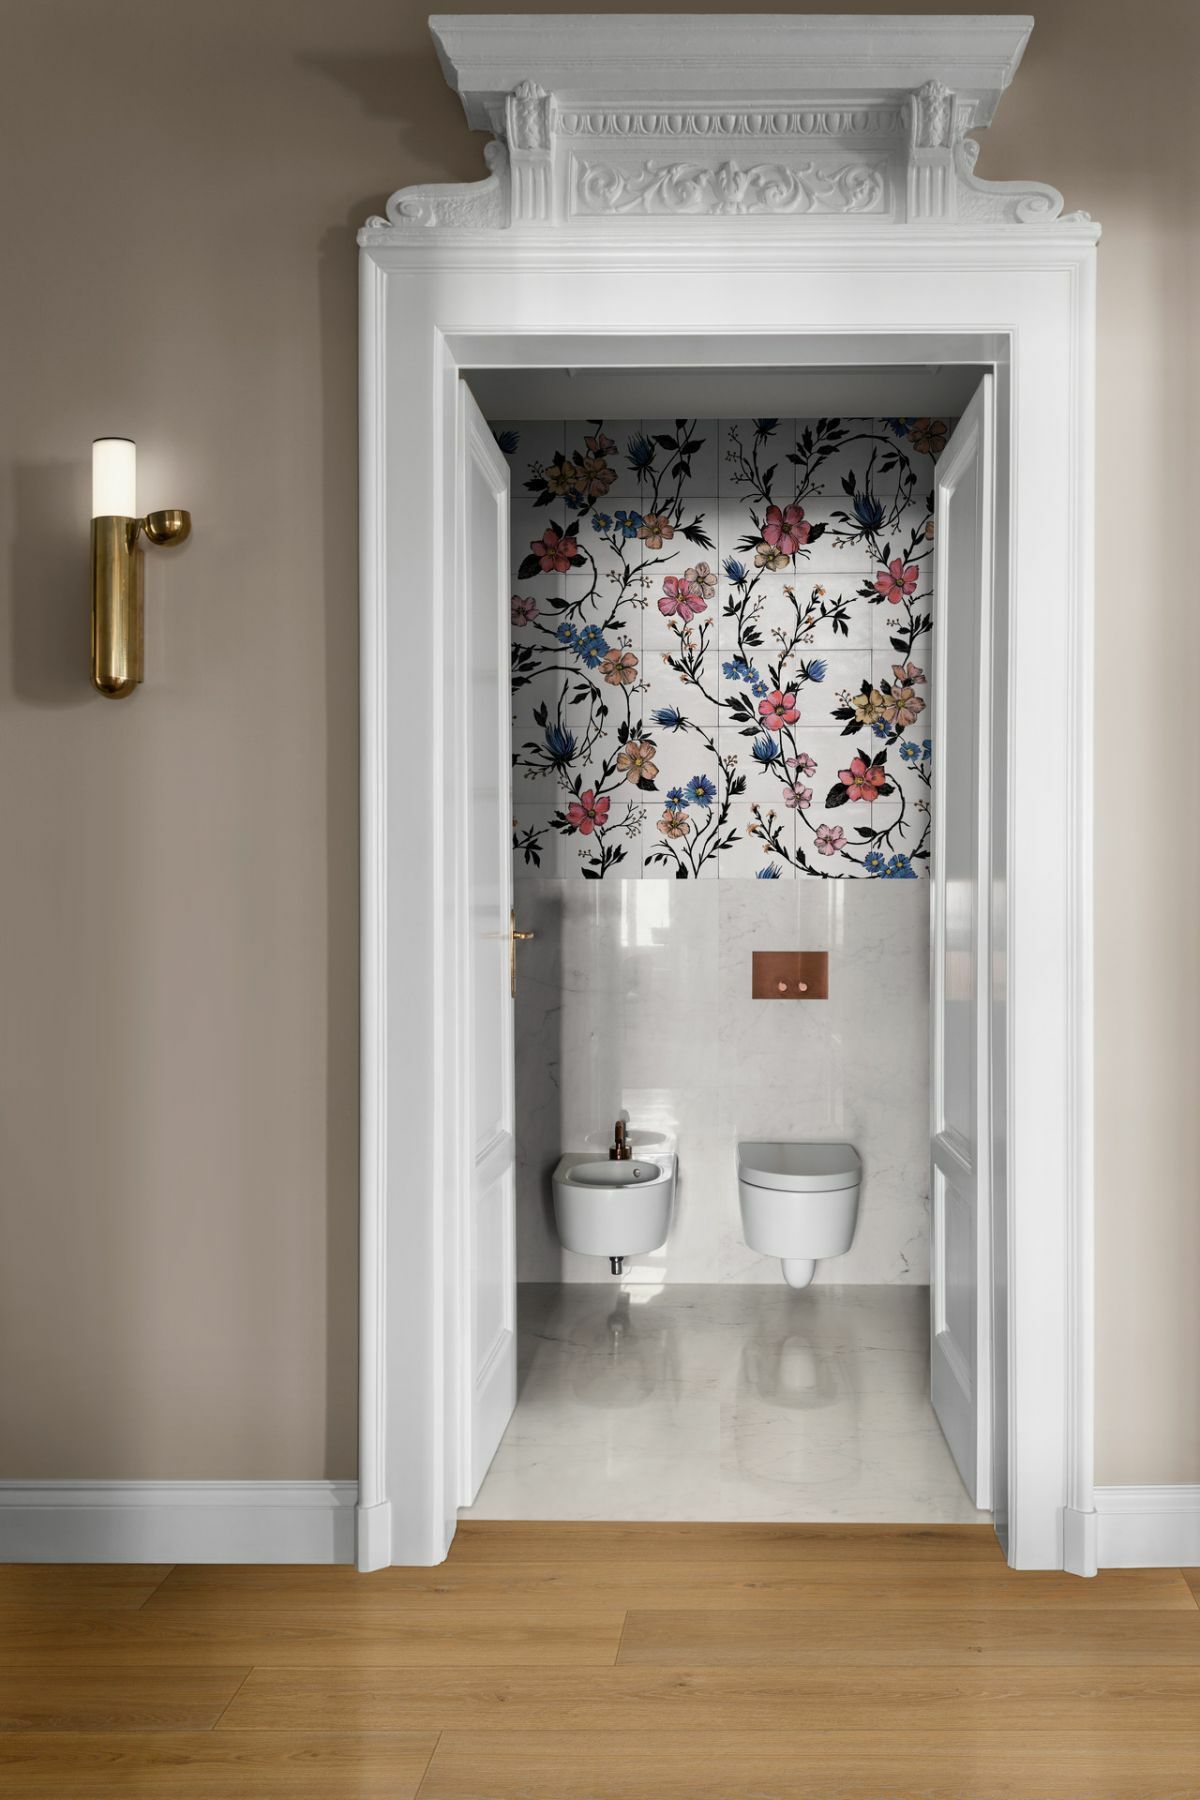 Marazzi Crogiolo Rice színes virágos fürdőszoba burkolat